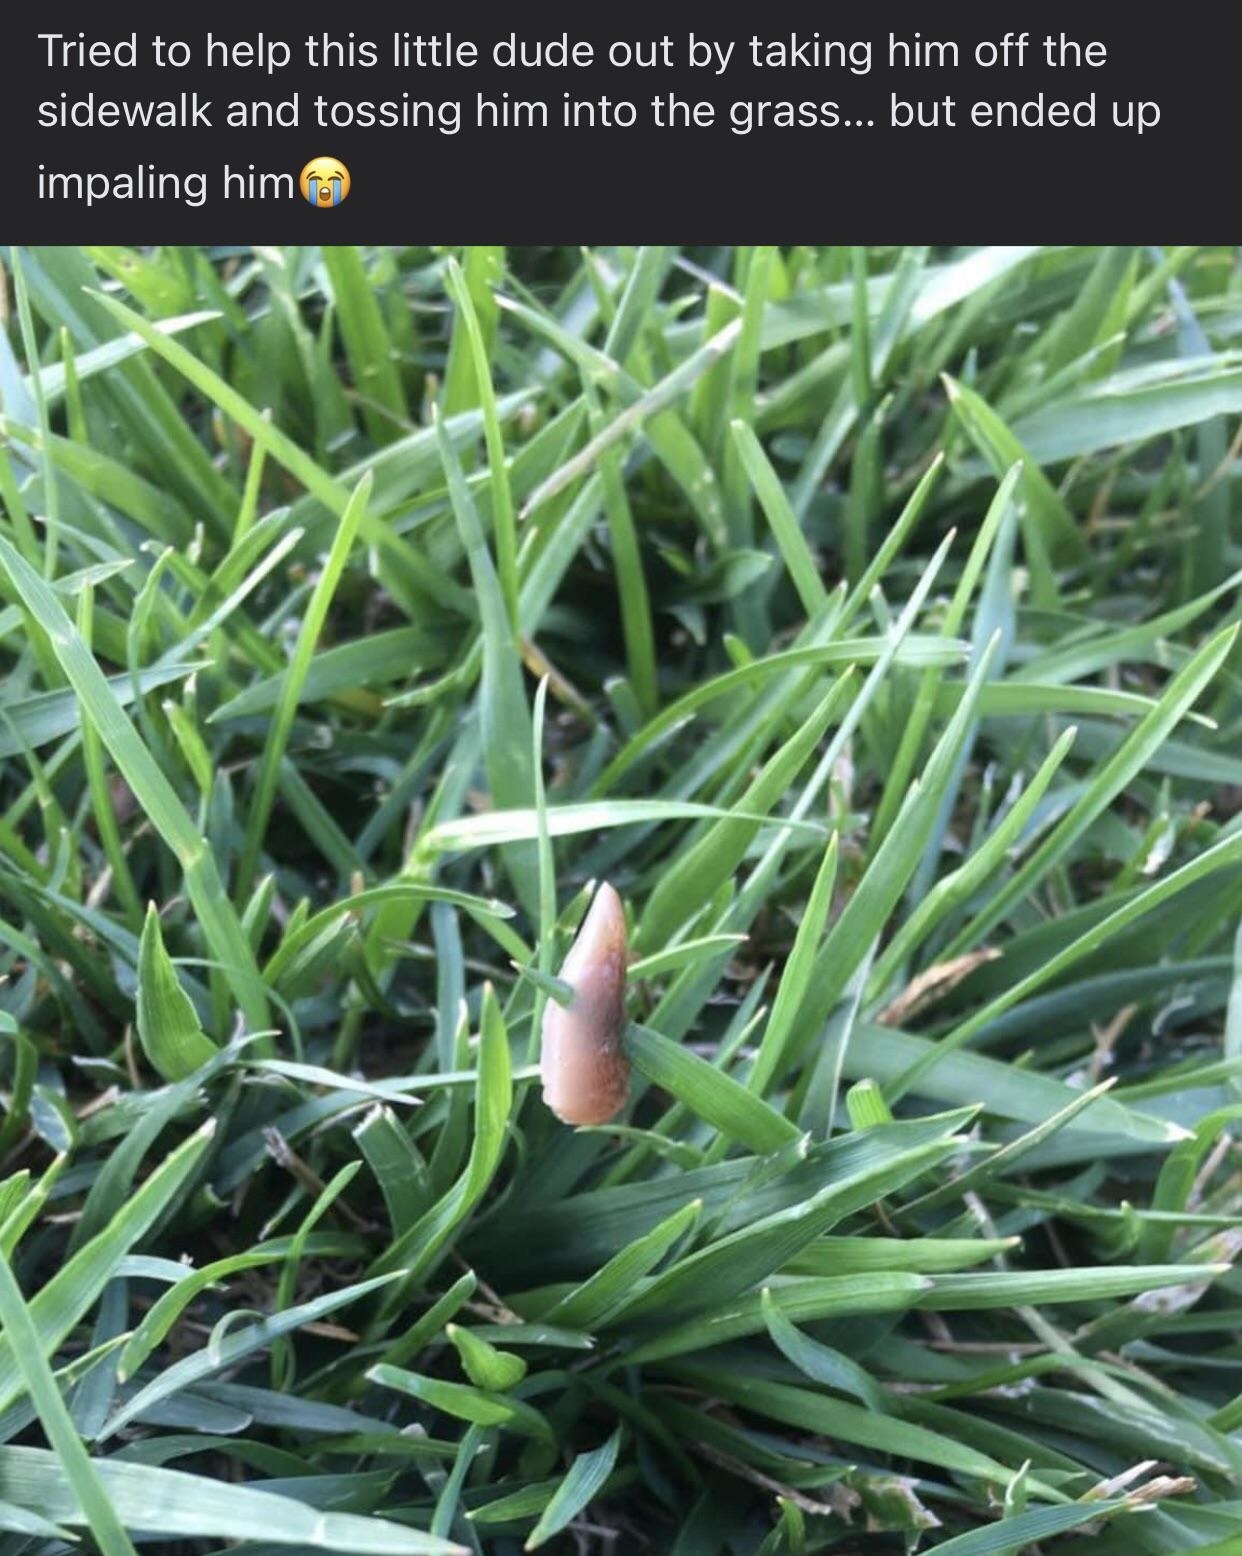 A slug impaled by a leaf